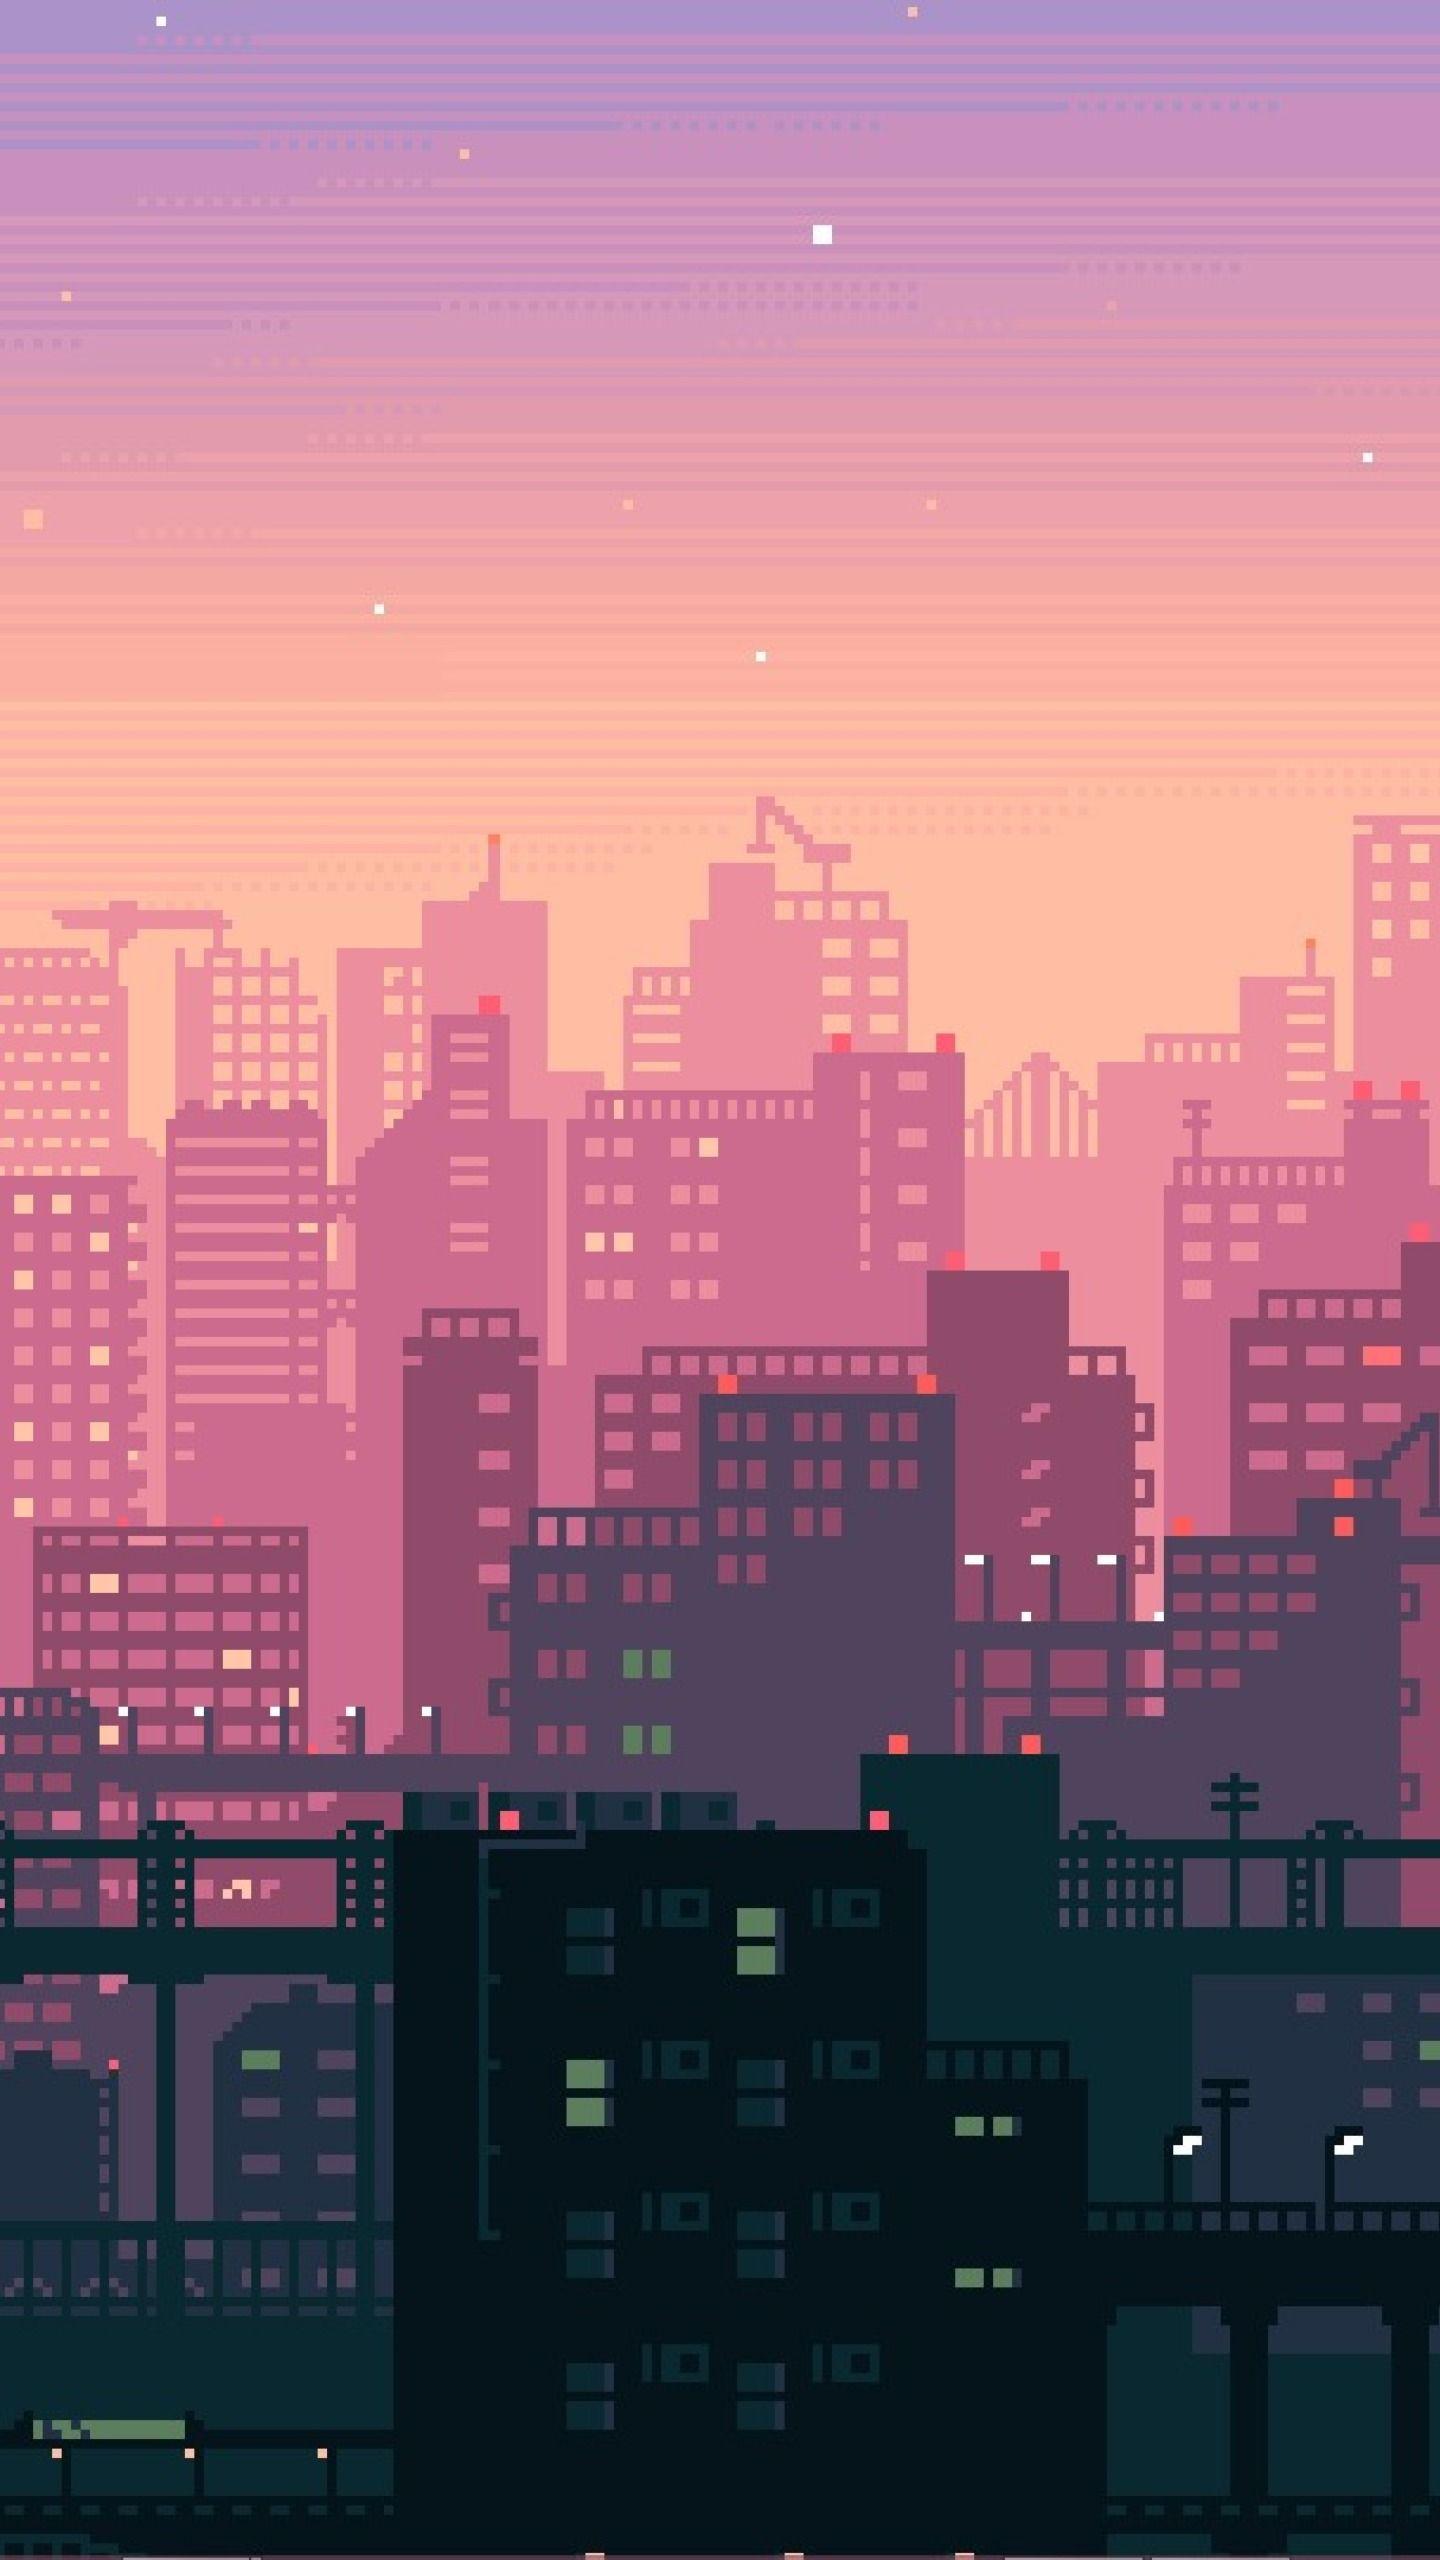 City Pixel Art Wallpapers - Top Free City Pixel Art Backgrounds ...